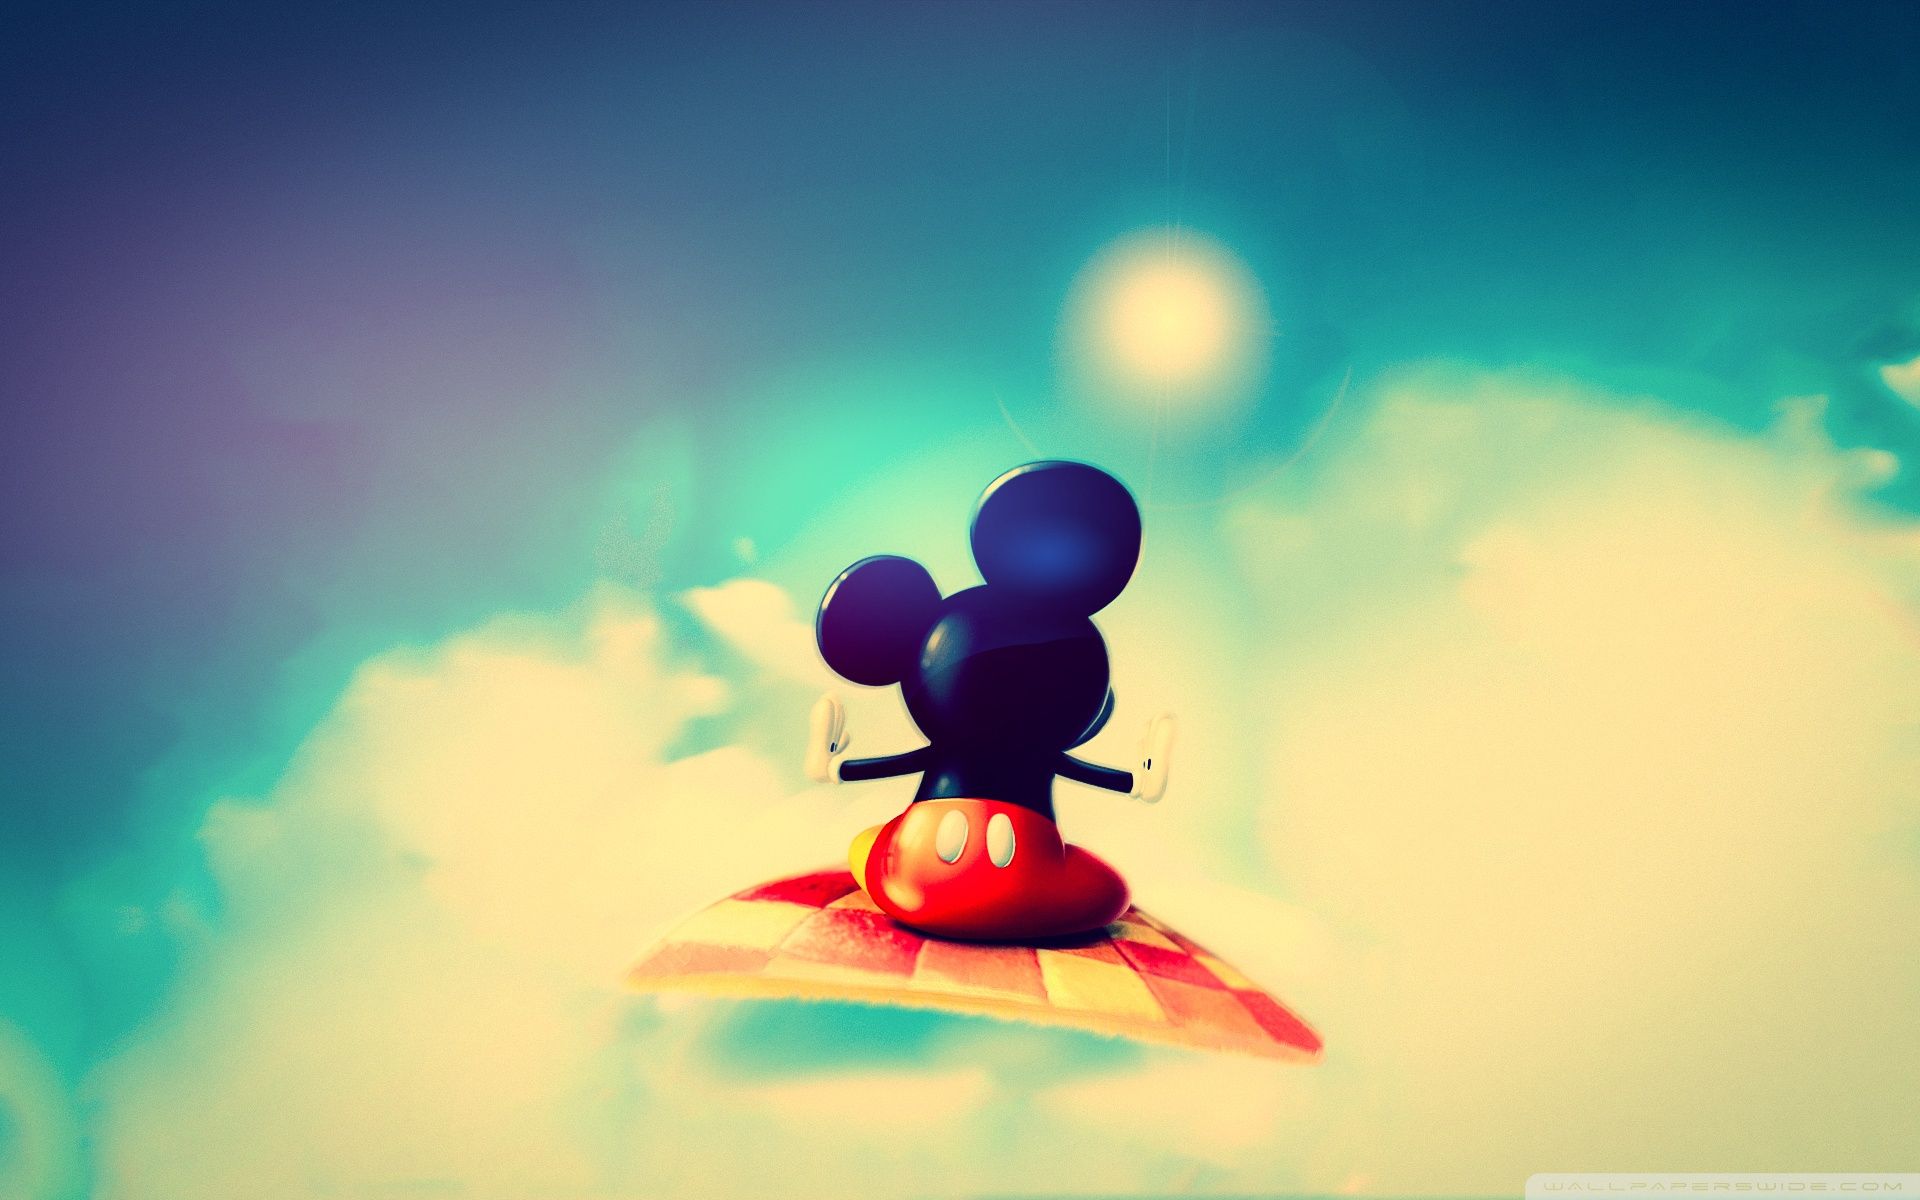 Mickey Mouse fondos de pantalla, fotos, imágenes